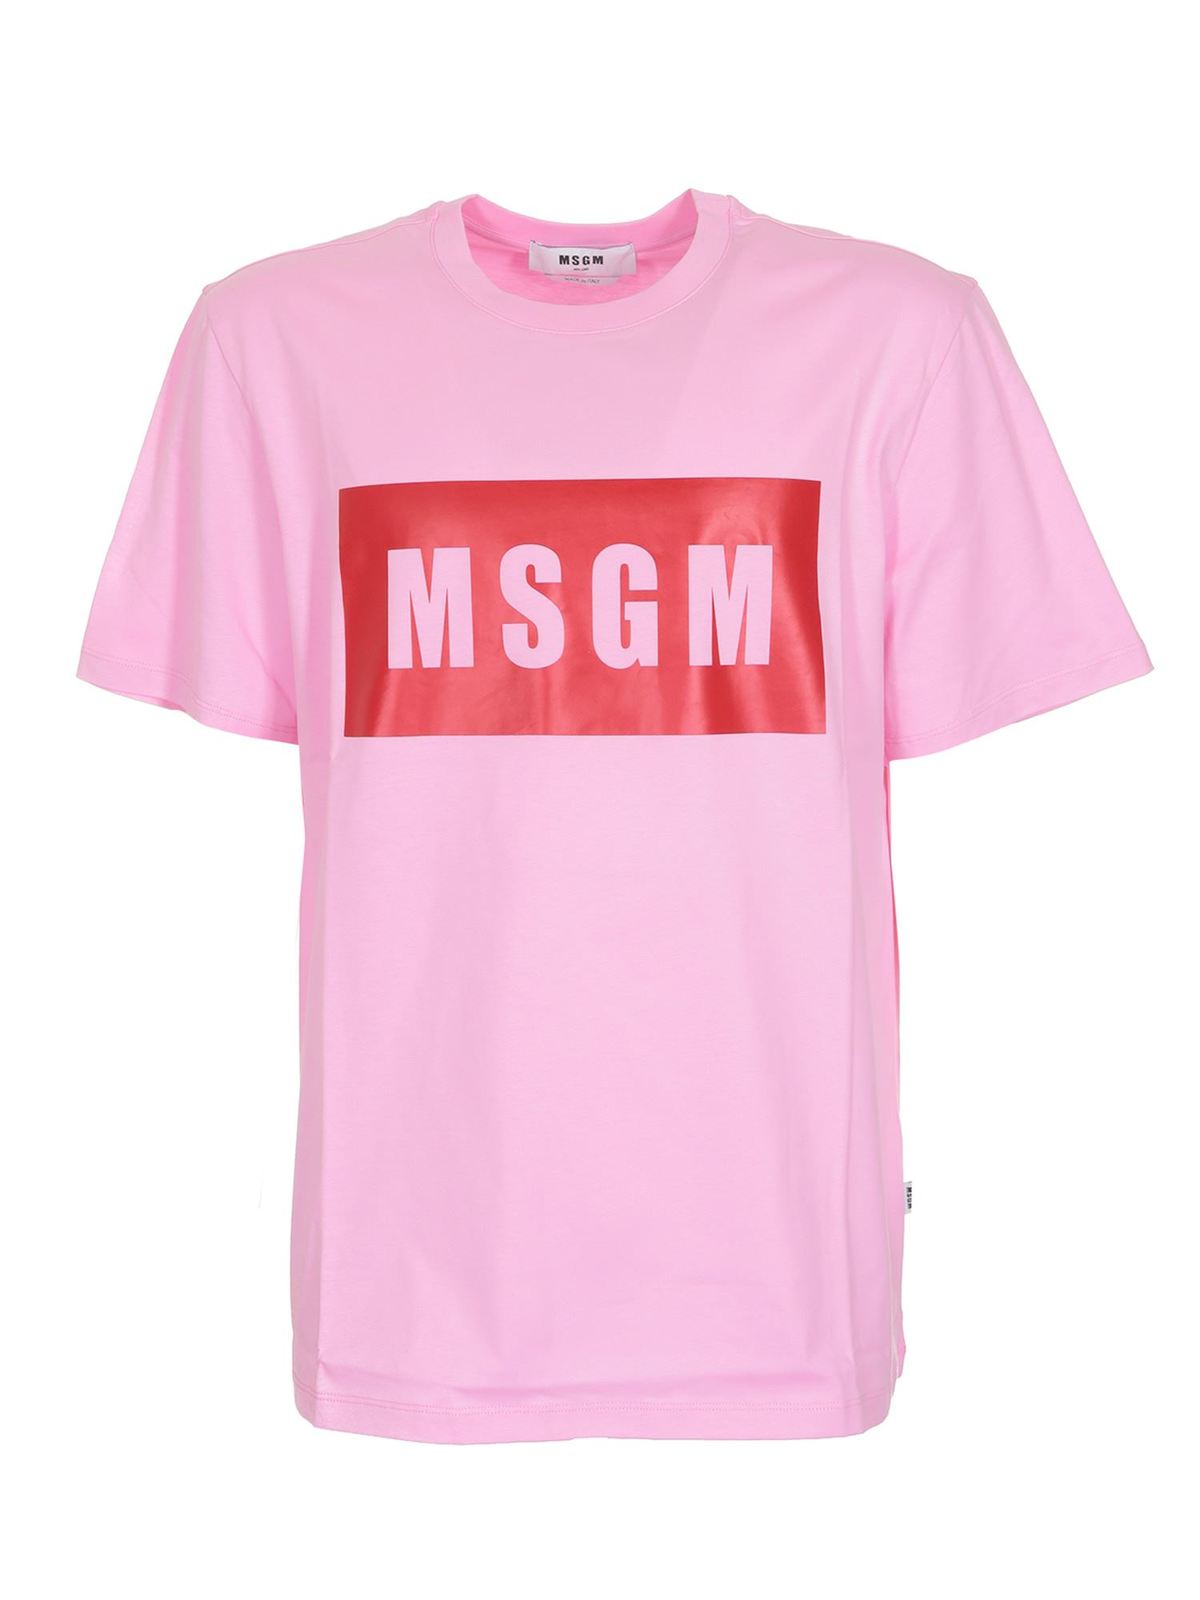 Box Logo T-shirt in pink